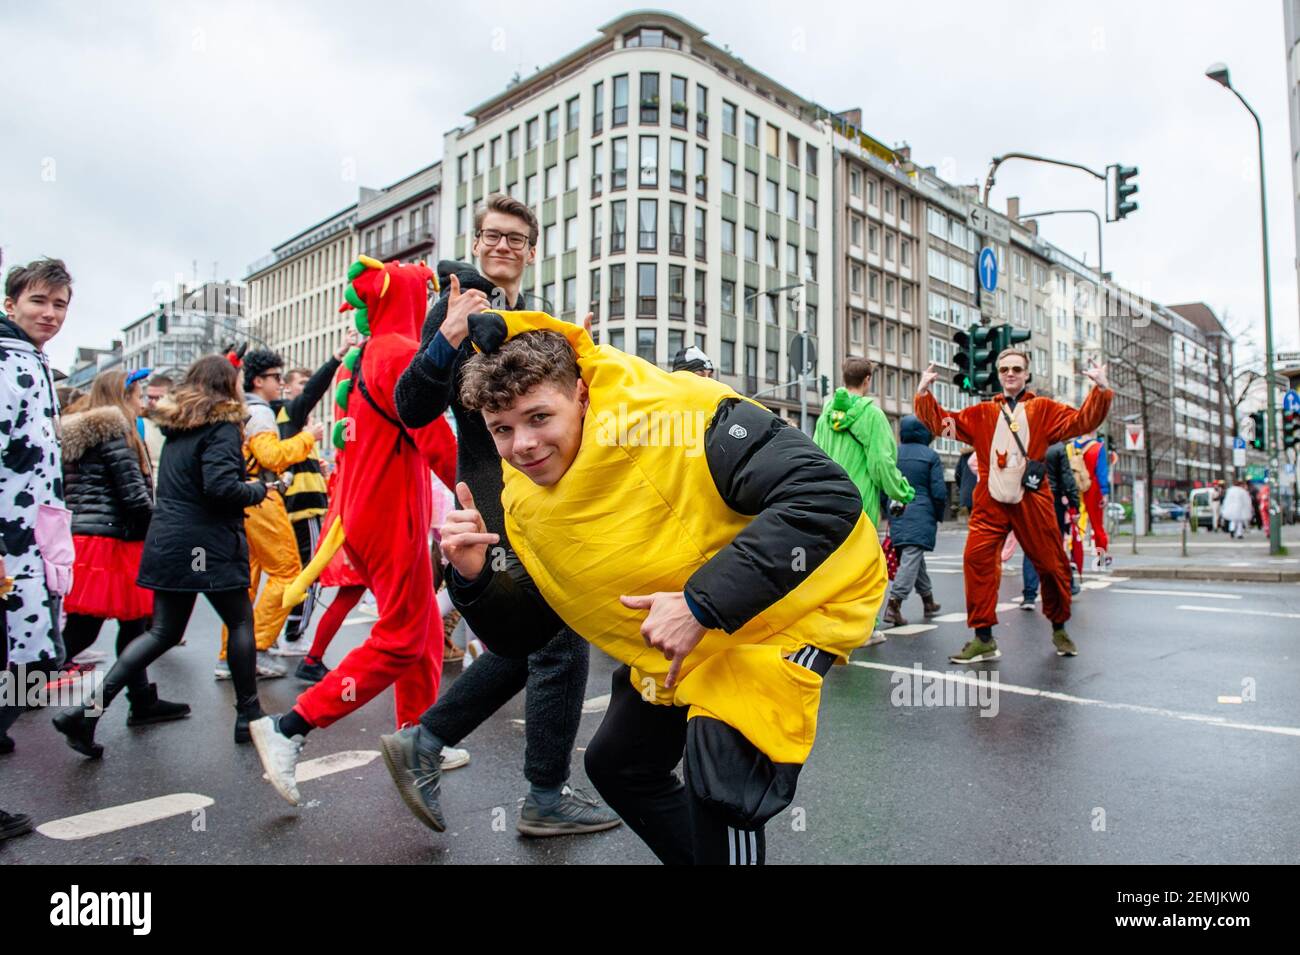 Durante la sfilata si vedono persone che indossano costumi che camminano per le strade. A Düsseldorf, il calendario degli eventi di Carnevale comprende non meno di 300 spettacoli di Carnevale, palle, anniversari, ricevimenti e feste in costume. Il motto di questa stagione è ‘Gemeinsam Jeck’ (insieme Carnevale). Le celebrazioni culminano nella Parata del Lunedì delle Rose. Più di 30 ensemble musicali e 5,000 partecipanti si uniscono alla processione attraverso la città. Carri elaborati e decorati affrontano questioni culturali e politiche e possono essere satirici, esilaranti e persino controversi. I galleggianti politici di satiris Foto Stock